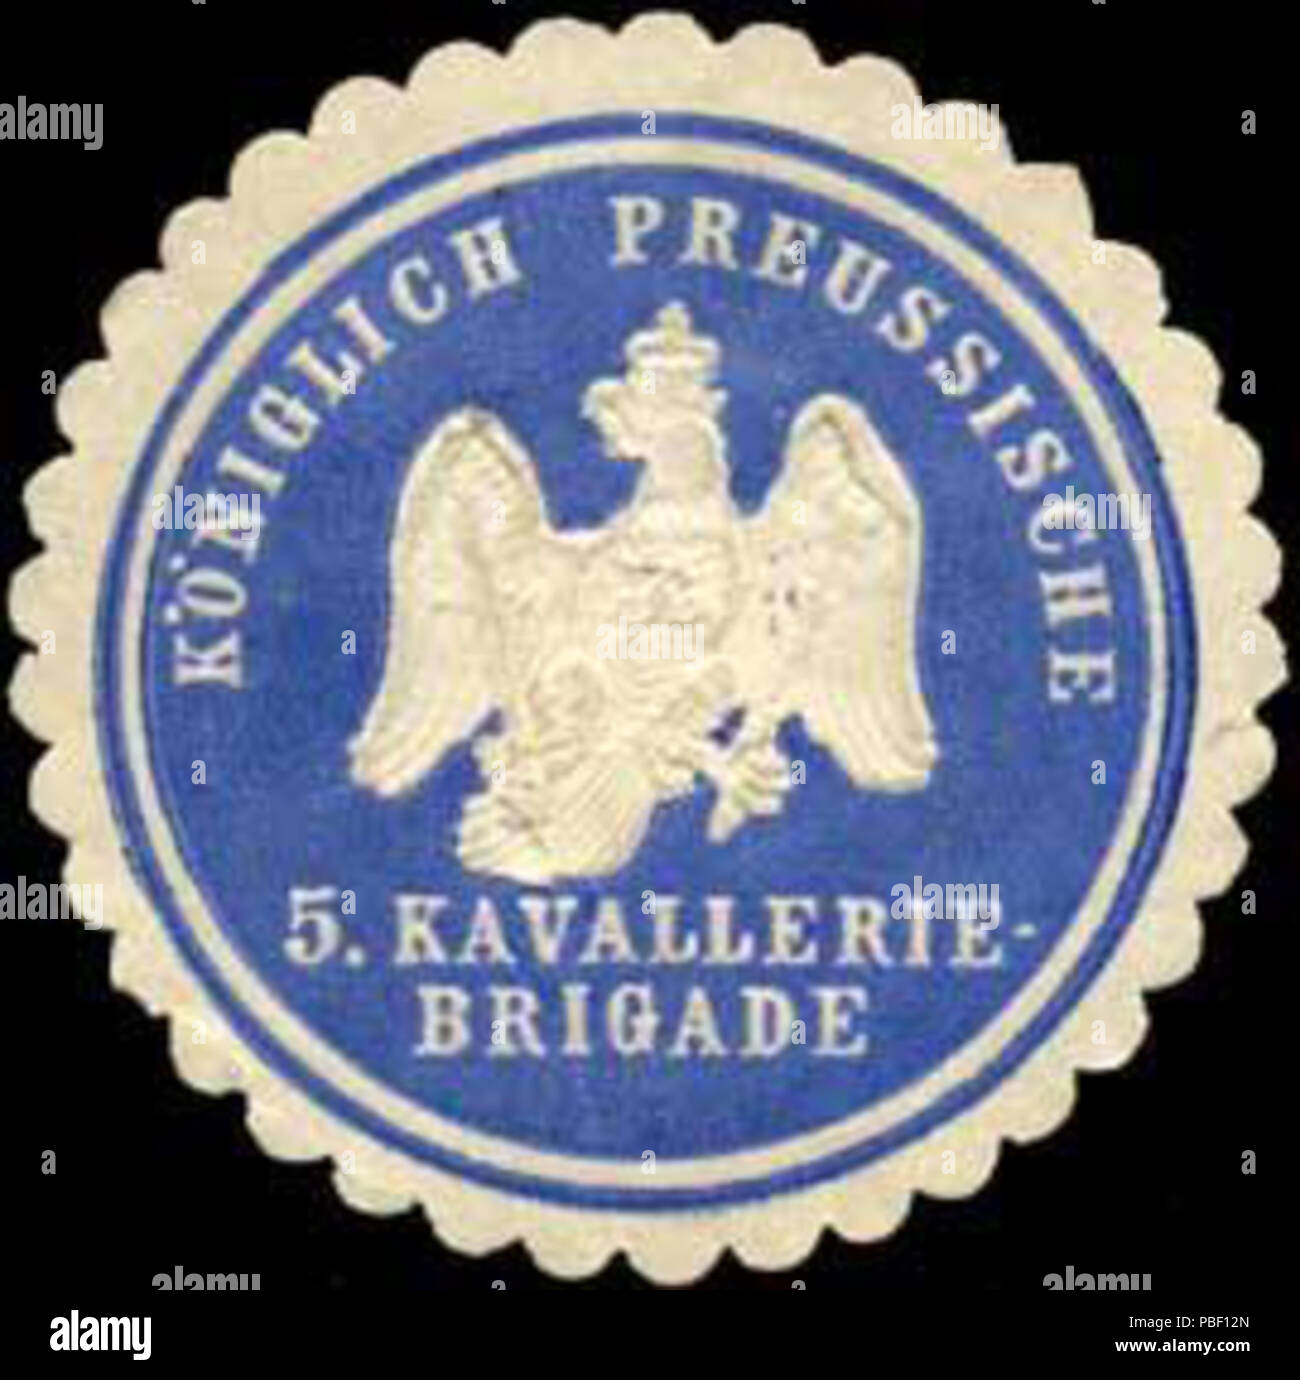 Alte Briefverschlussmarke aus Papier, welche seit ca. 1850 von Behoerden, Anwaelten, Notaren und Firmen zum verschliessen der Post verwendet wurde. 1451 Siegelmarke Königlich Preussische 5. Kavallerie - Brigade W0238081 Stock Photo